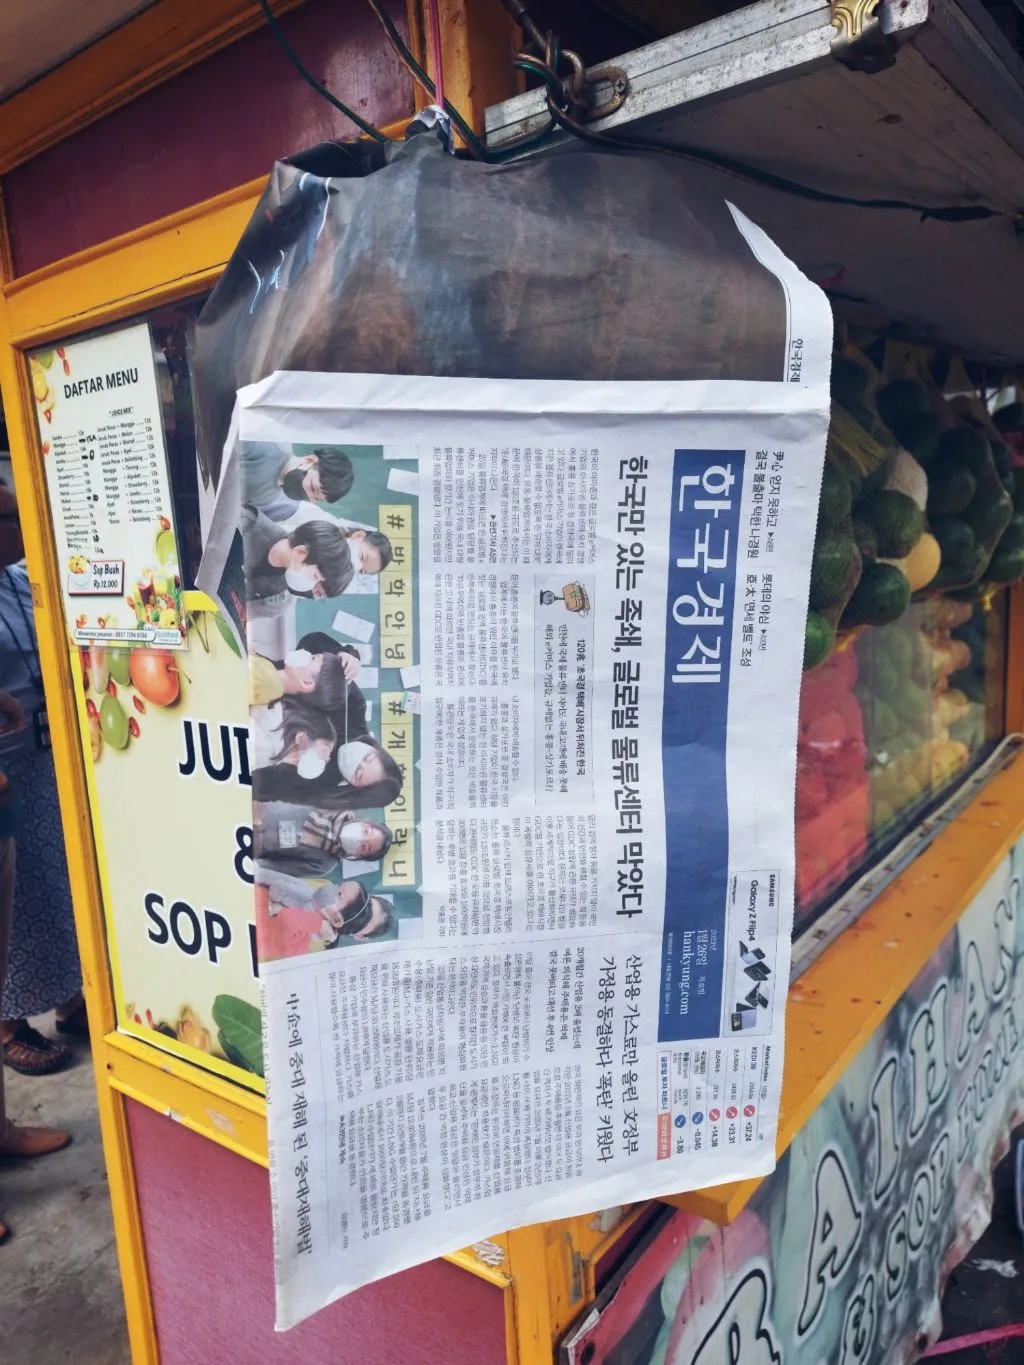 Koran Korea Hankyung di Bekasi